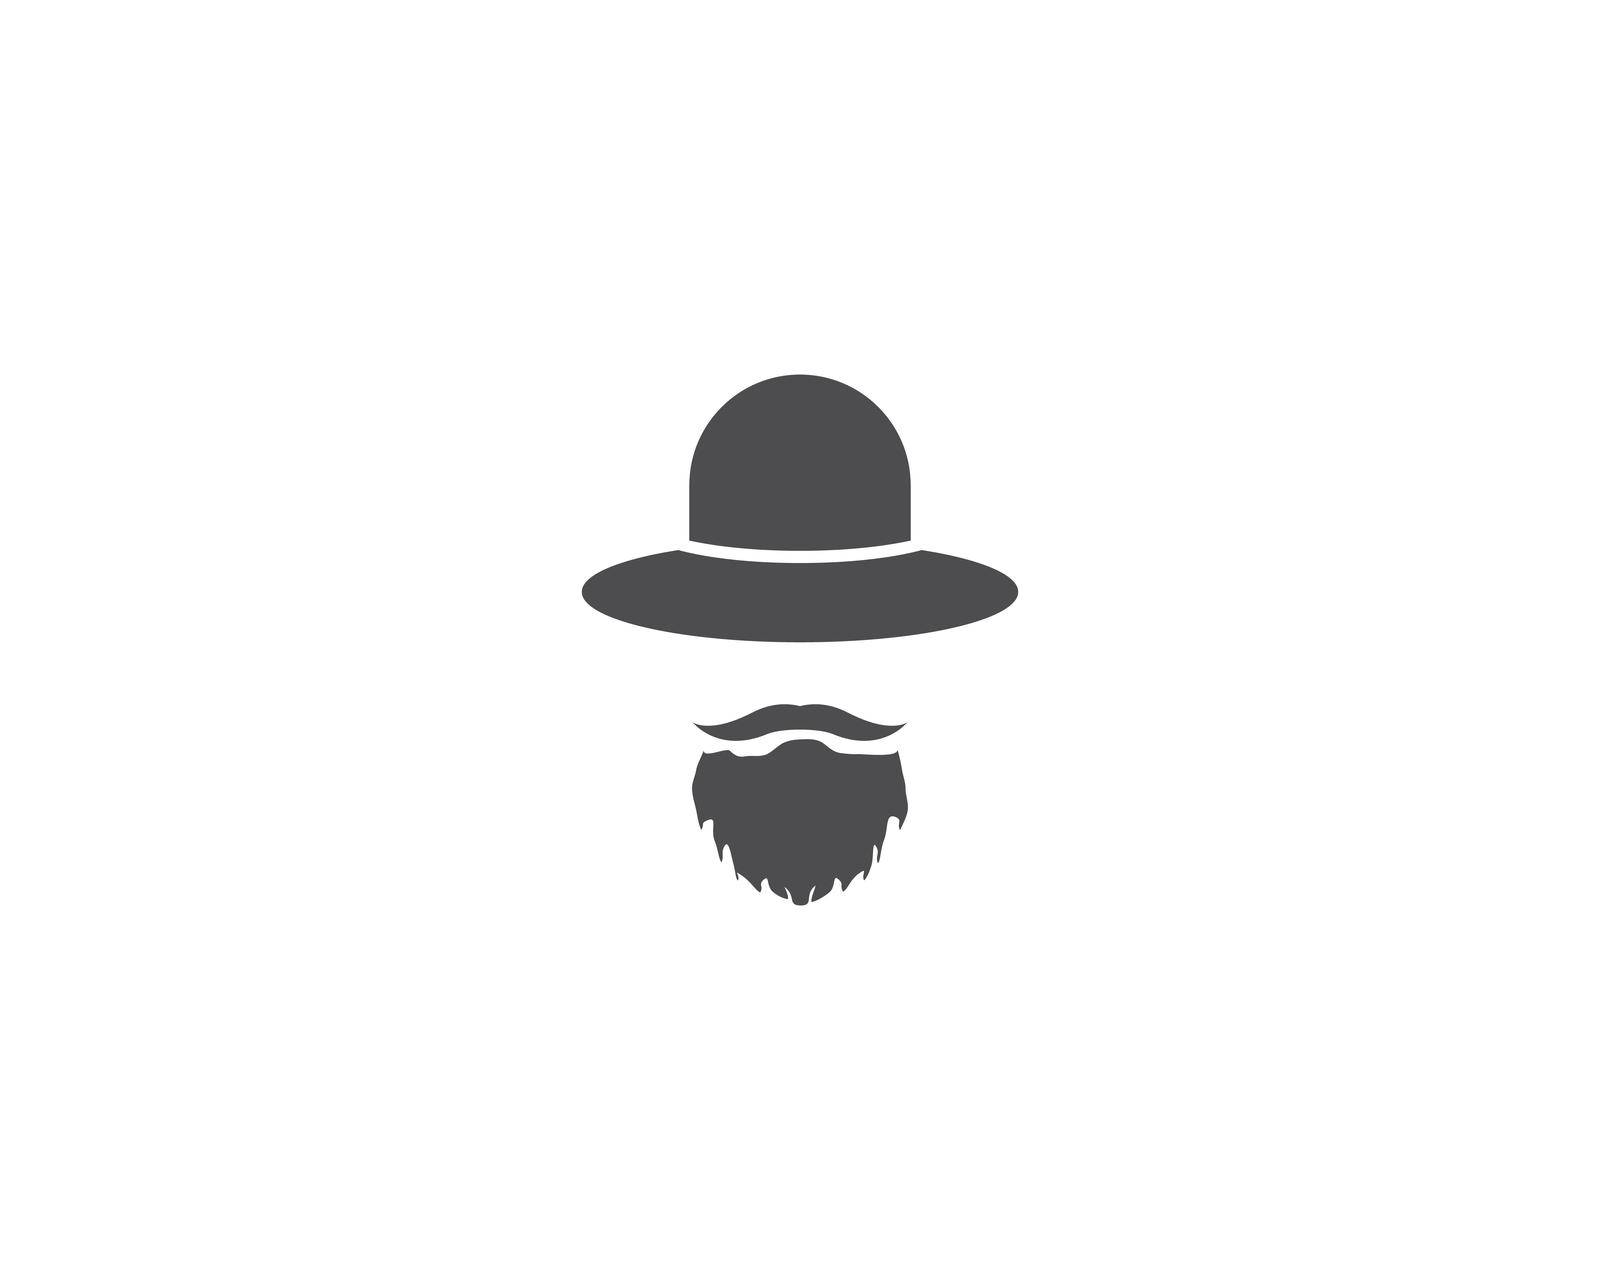 Gentleman Tuxedo logo vector icon template